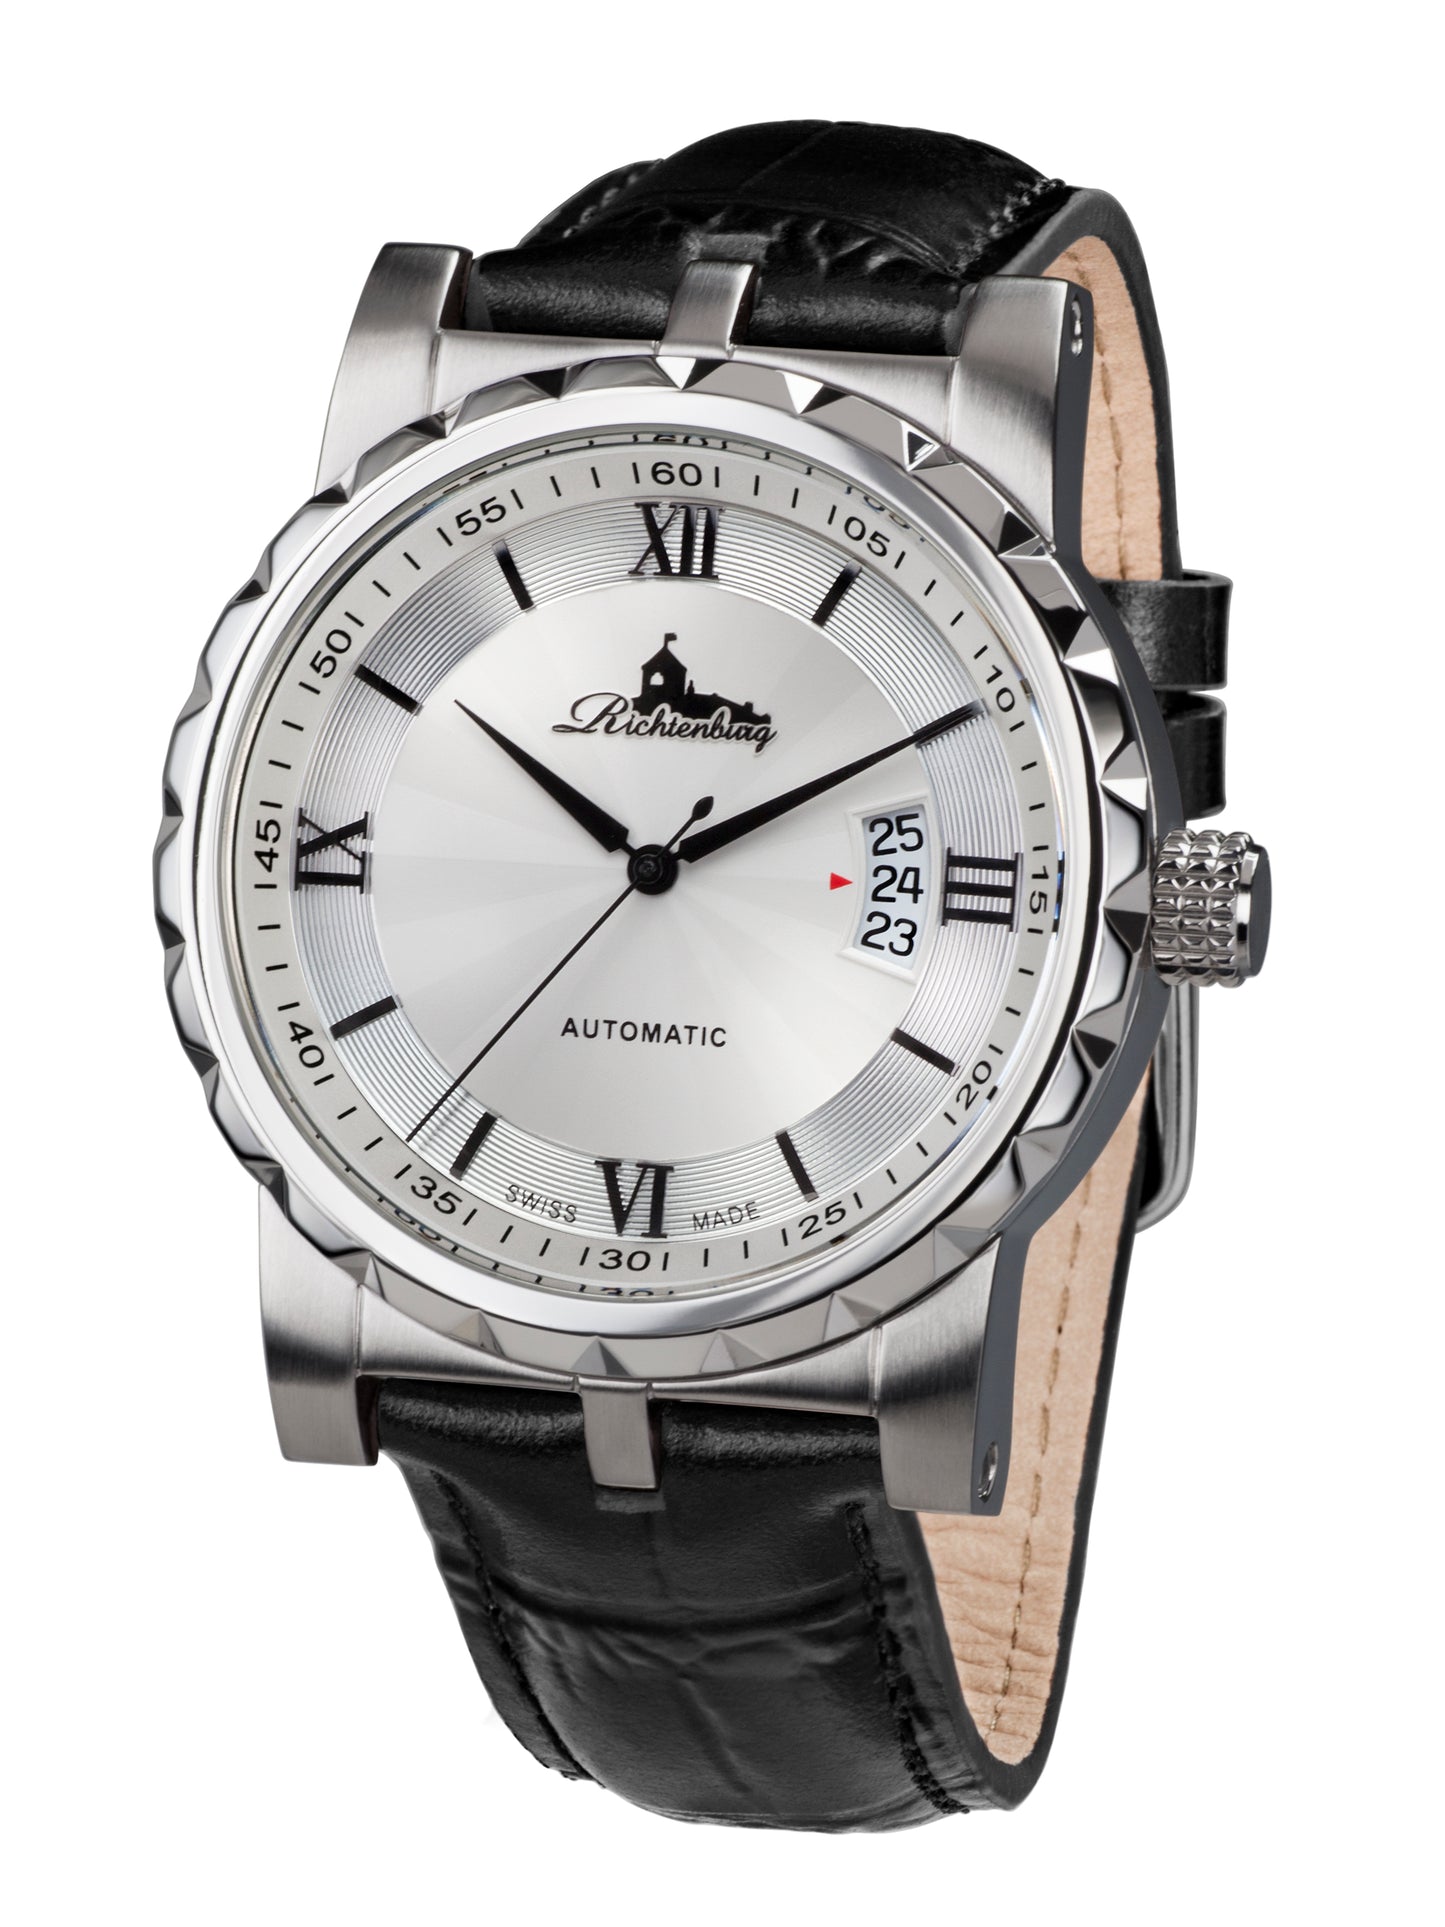 Automatic watches — Lugano — Richtenburg — steel